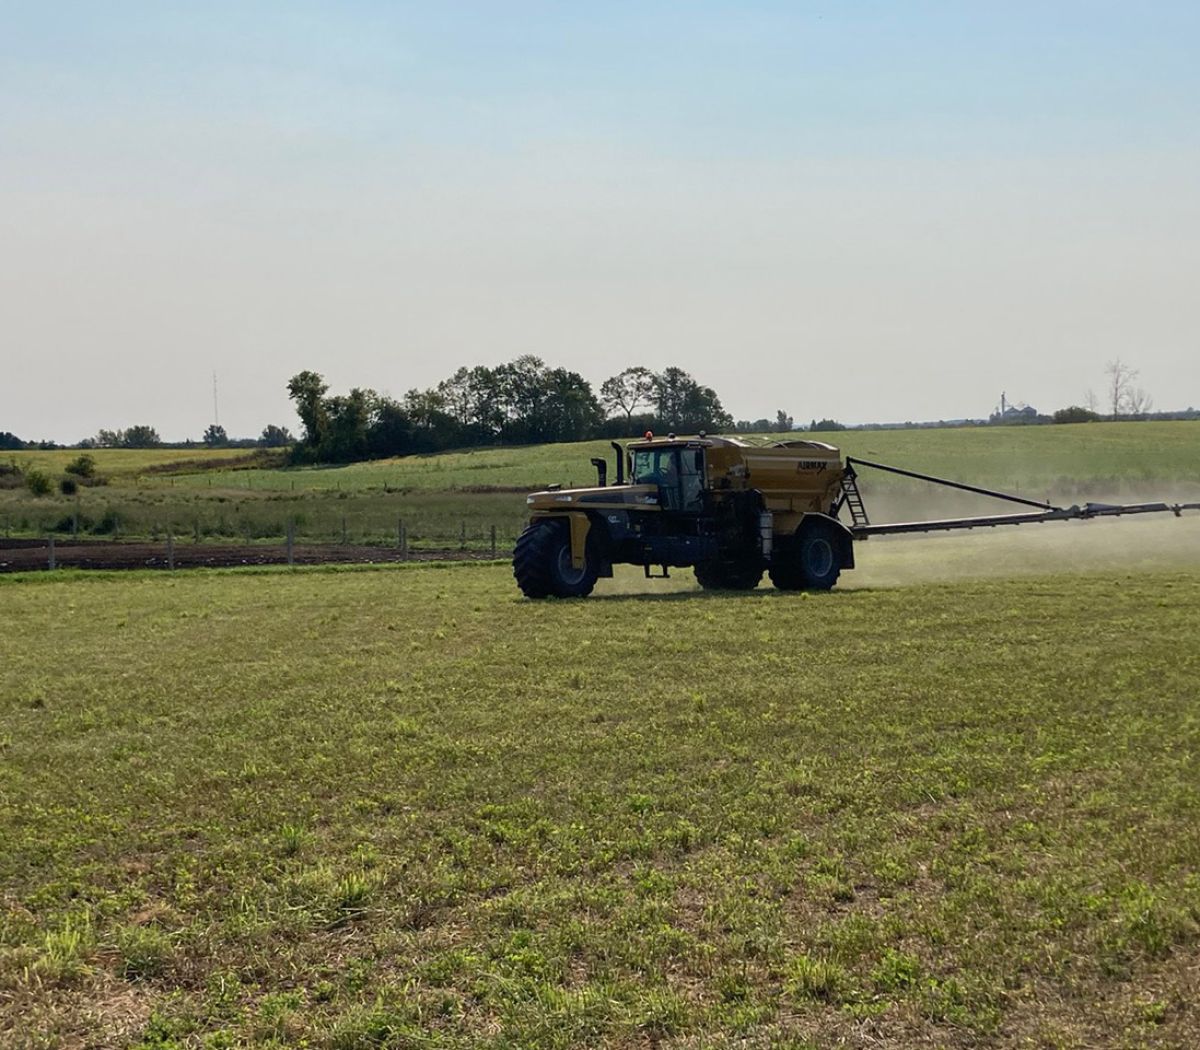 Alliance Agri-Turf fertilizer equipment working on crop